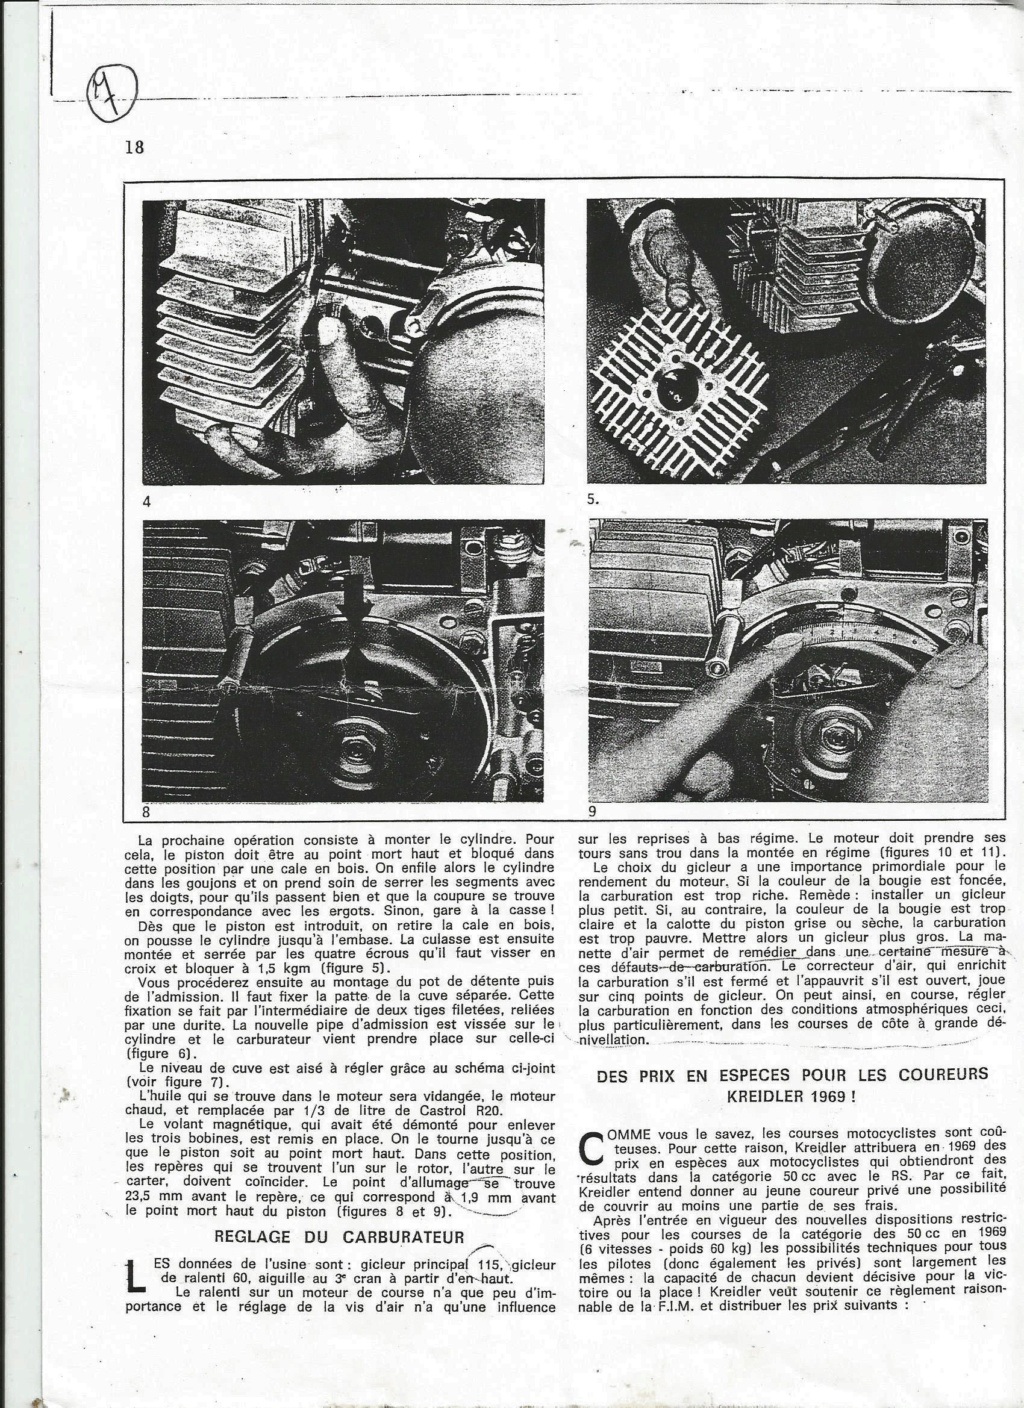 Le Kreidler RS dans la Presse. Suite. - Page 2 Kreidl17